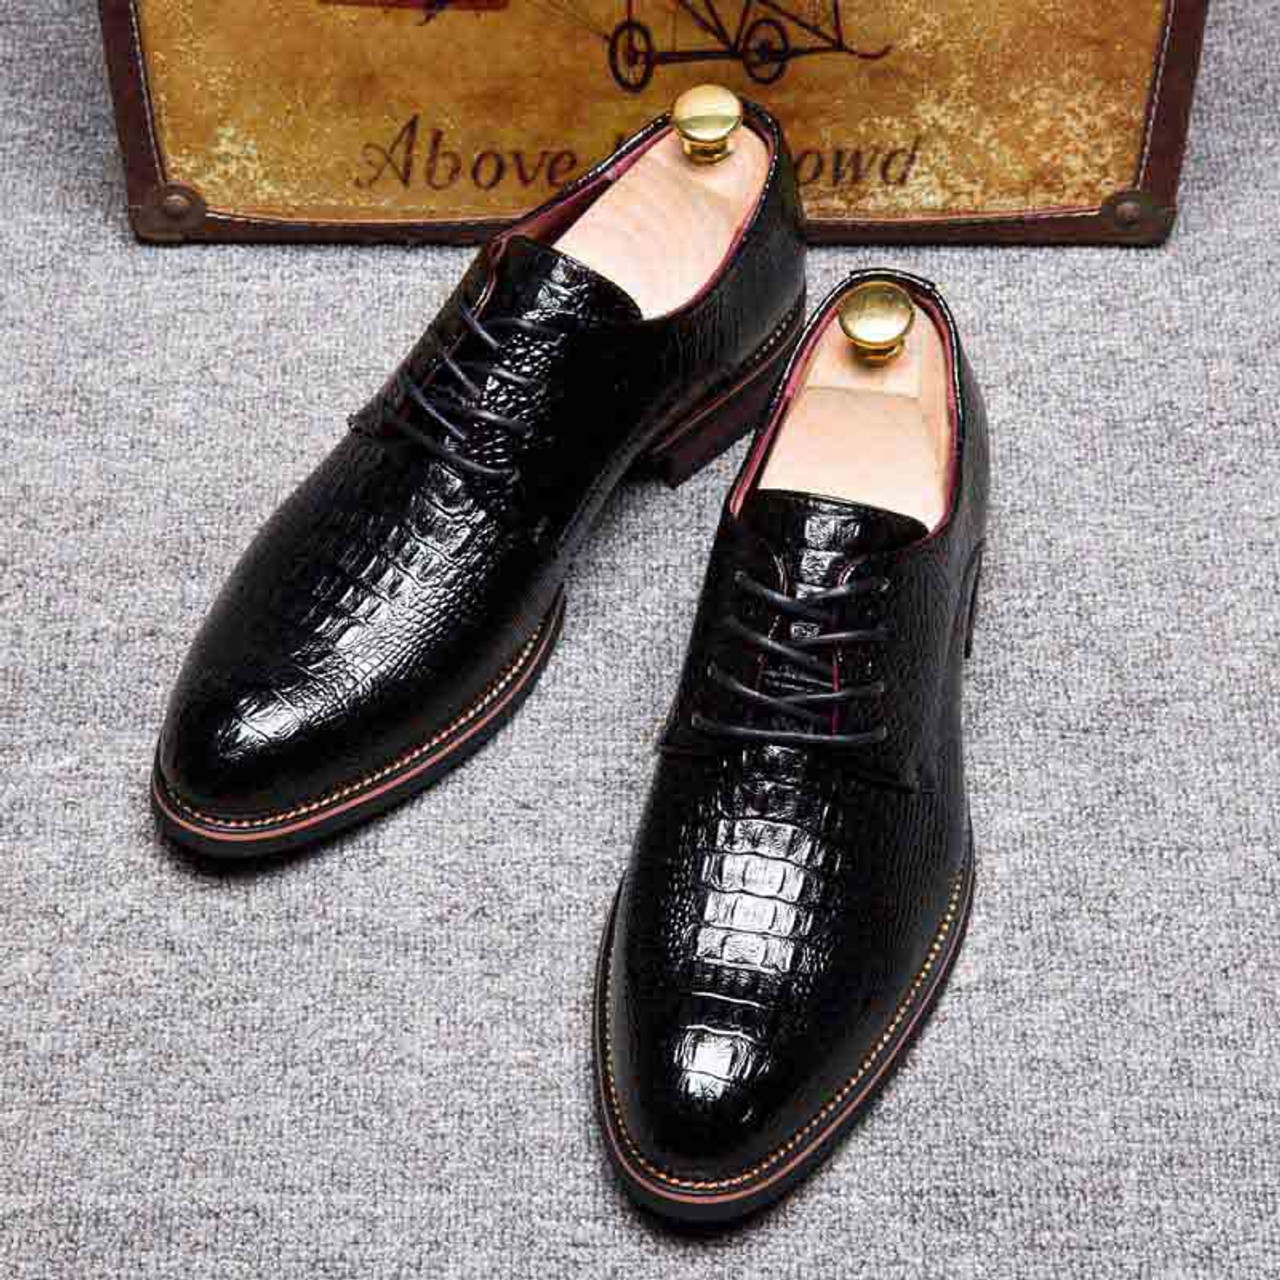 Black crocodile pattern derby lace up dress shoe | Mens dress shoes ...